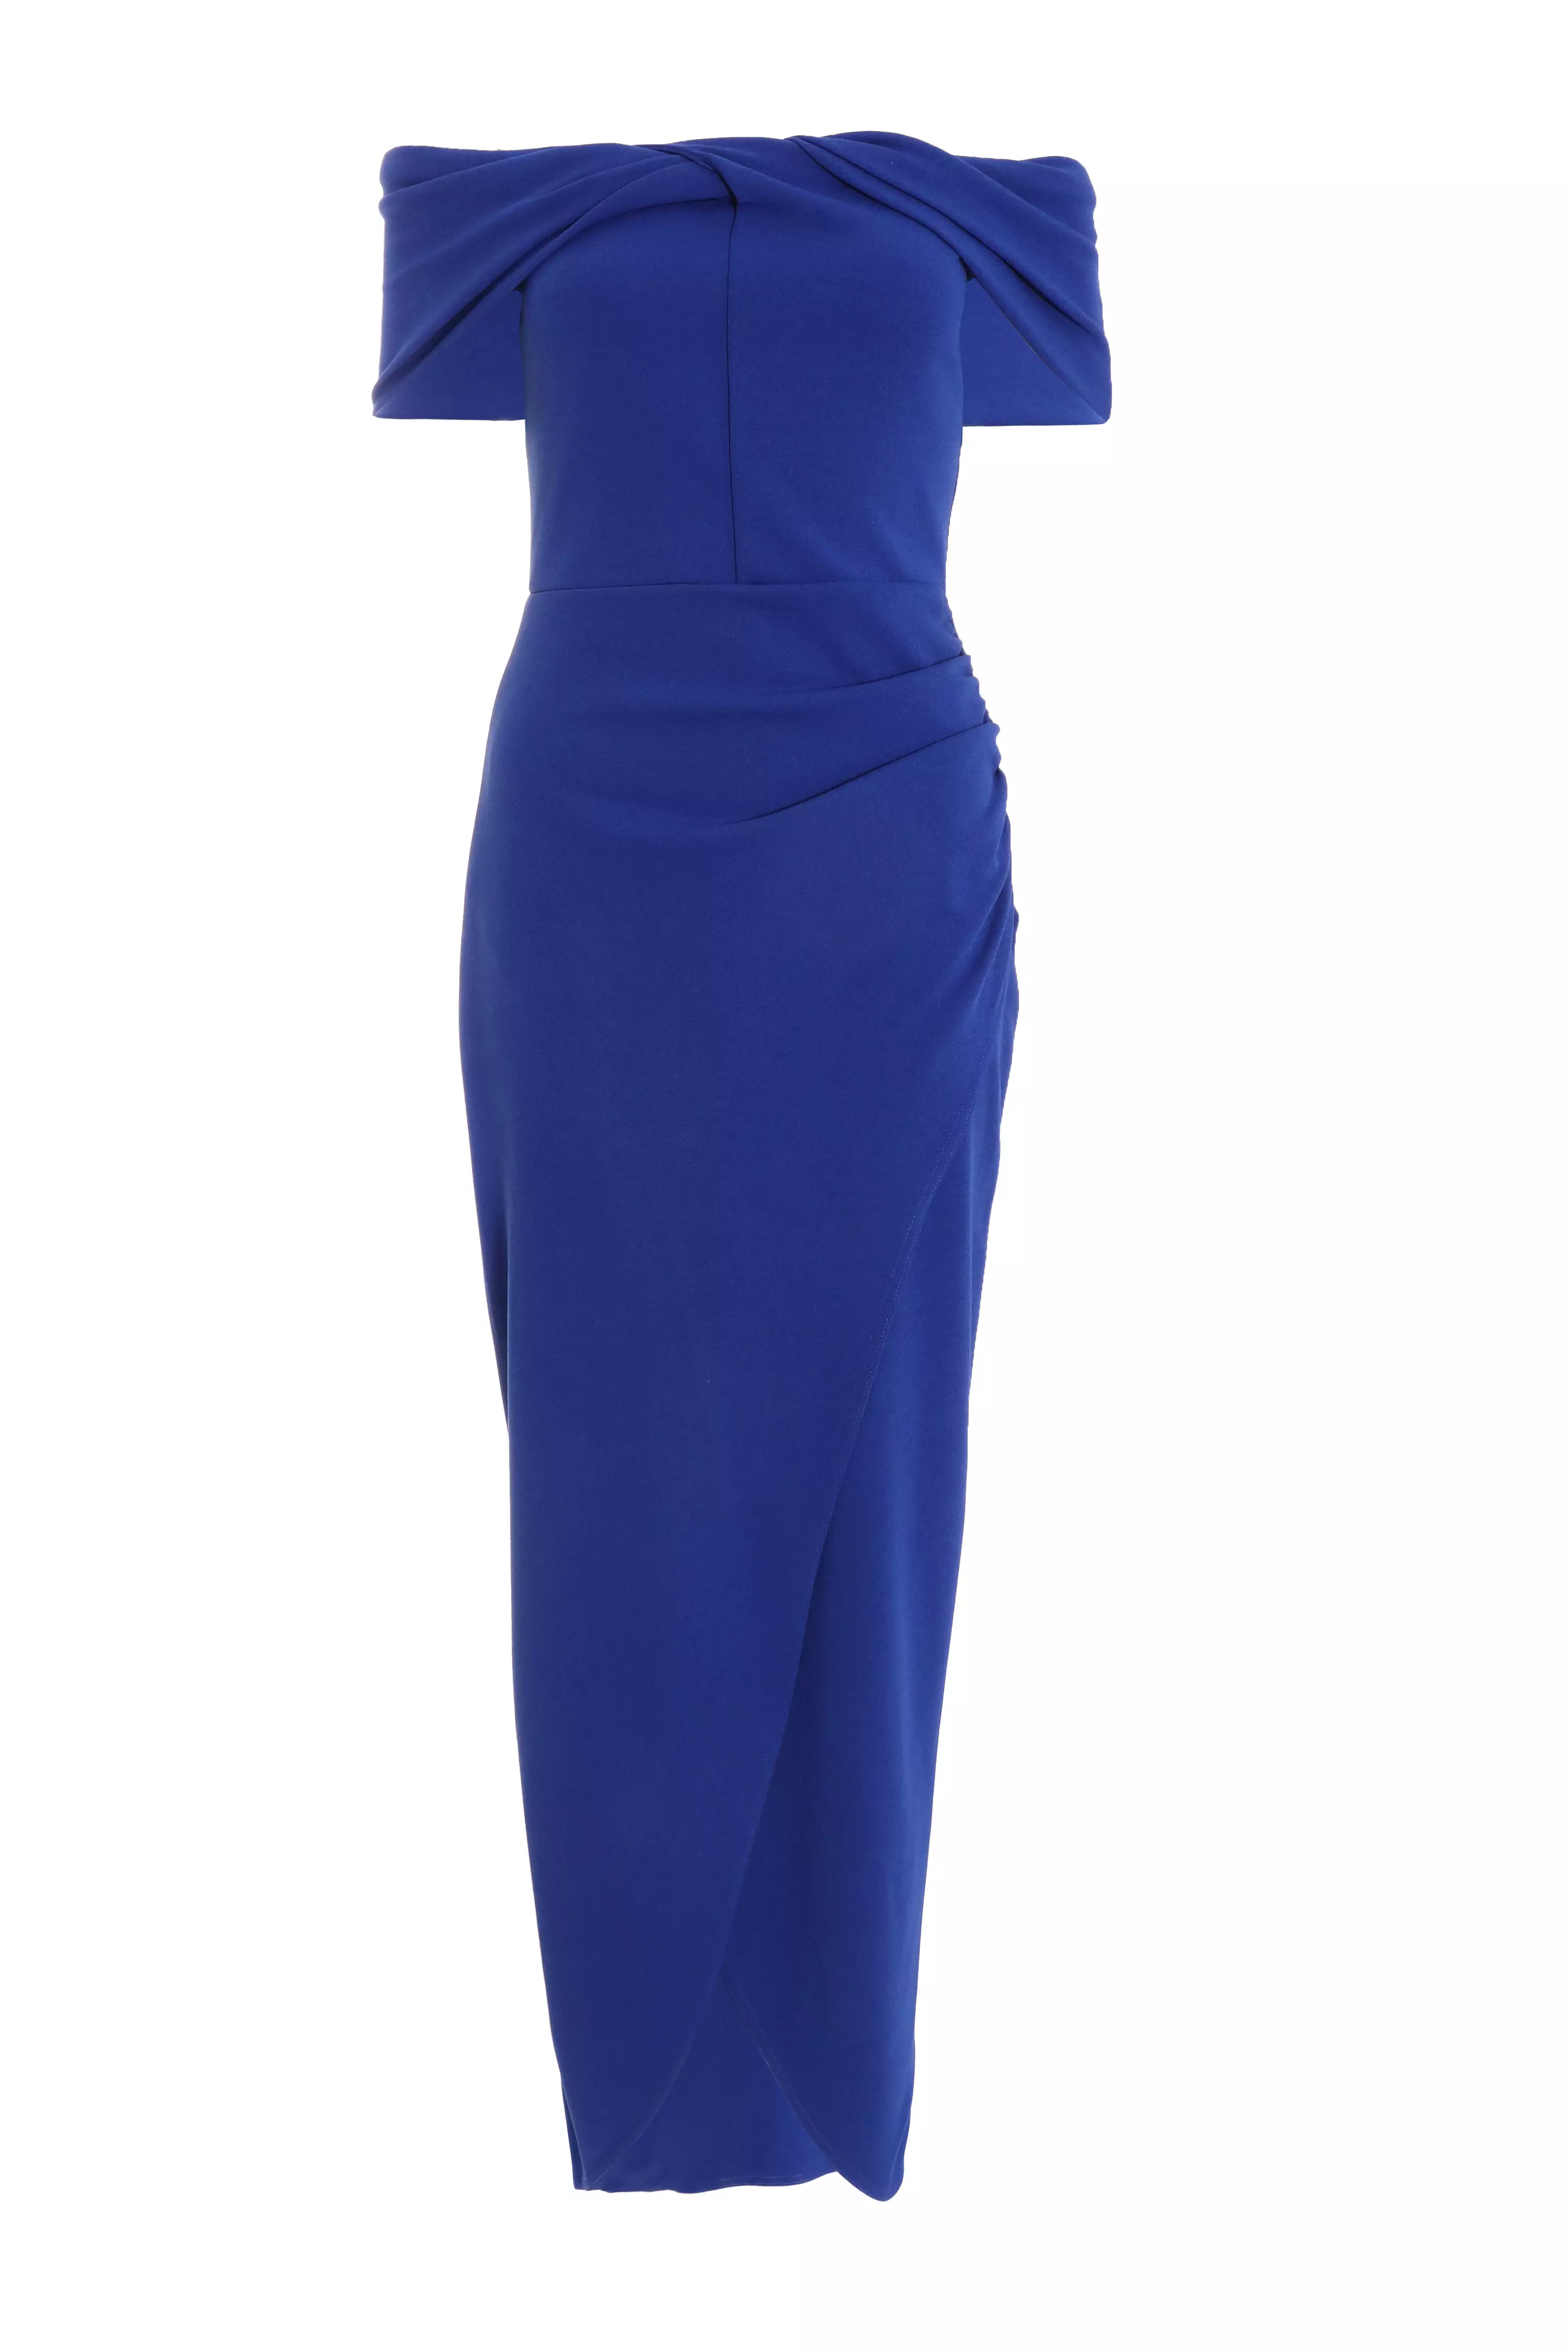 Royal Blue Ruched Bardot Maxi Dress - QUIZ Clothing